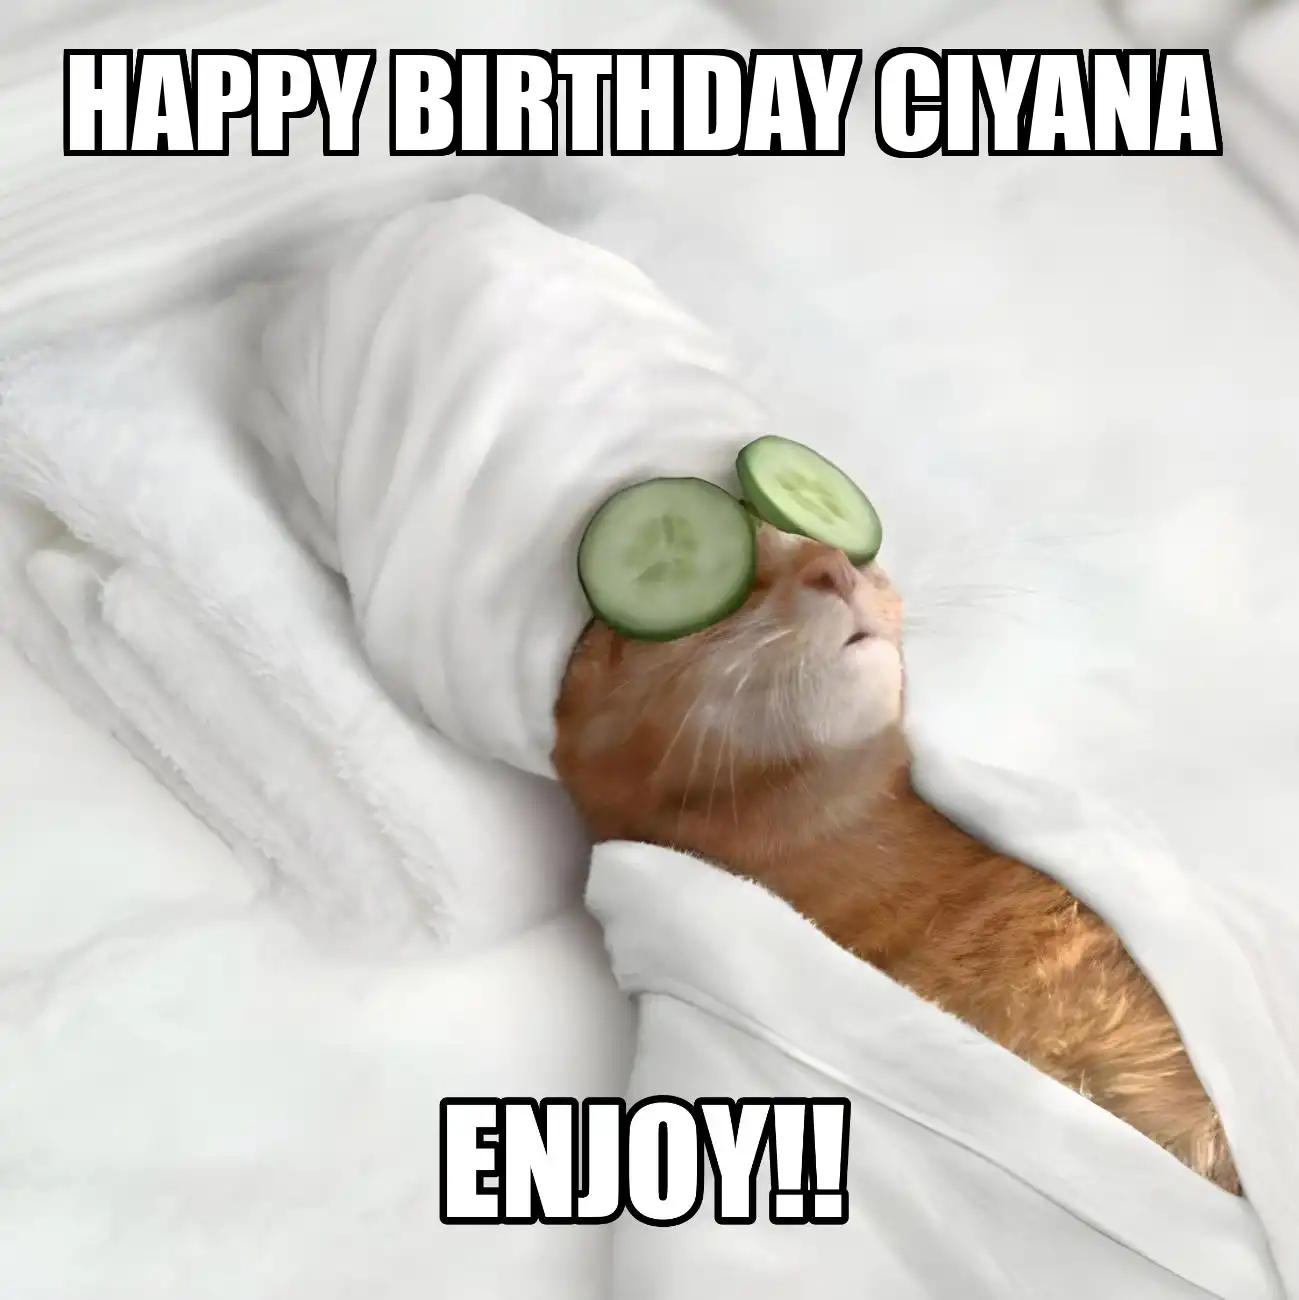 Happy Birthday Ciyana Enjoy Cat Meme